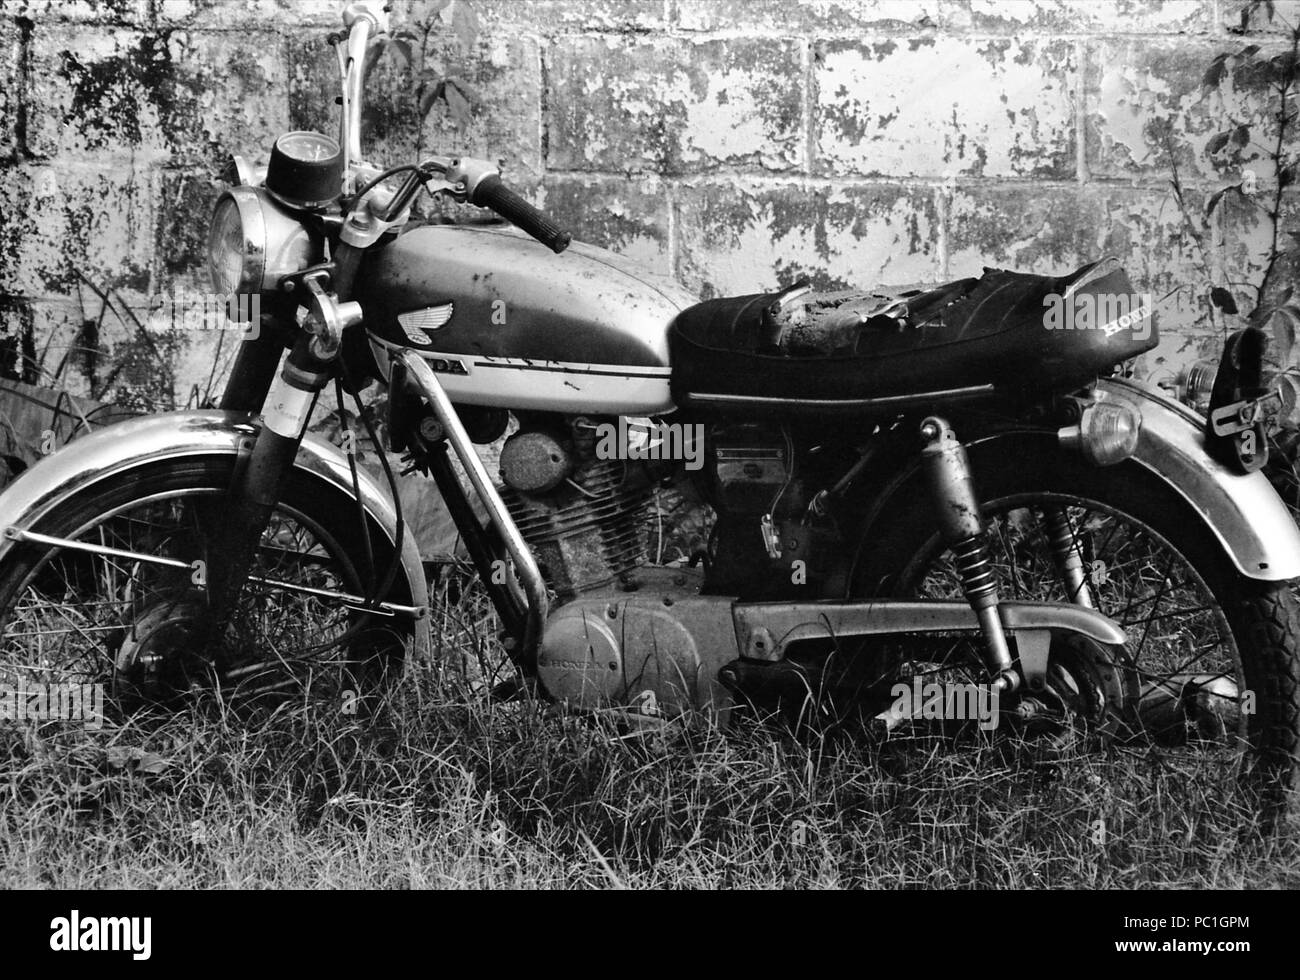 Moto abandonnée Banque d'images noir et blanc - Alamy